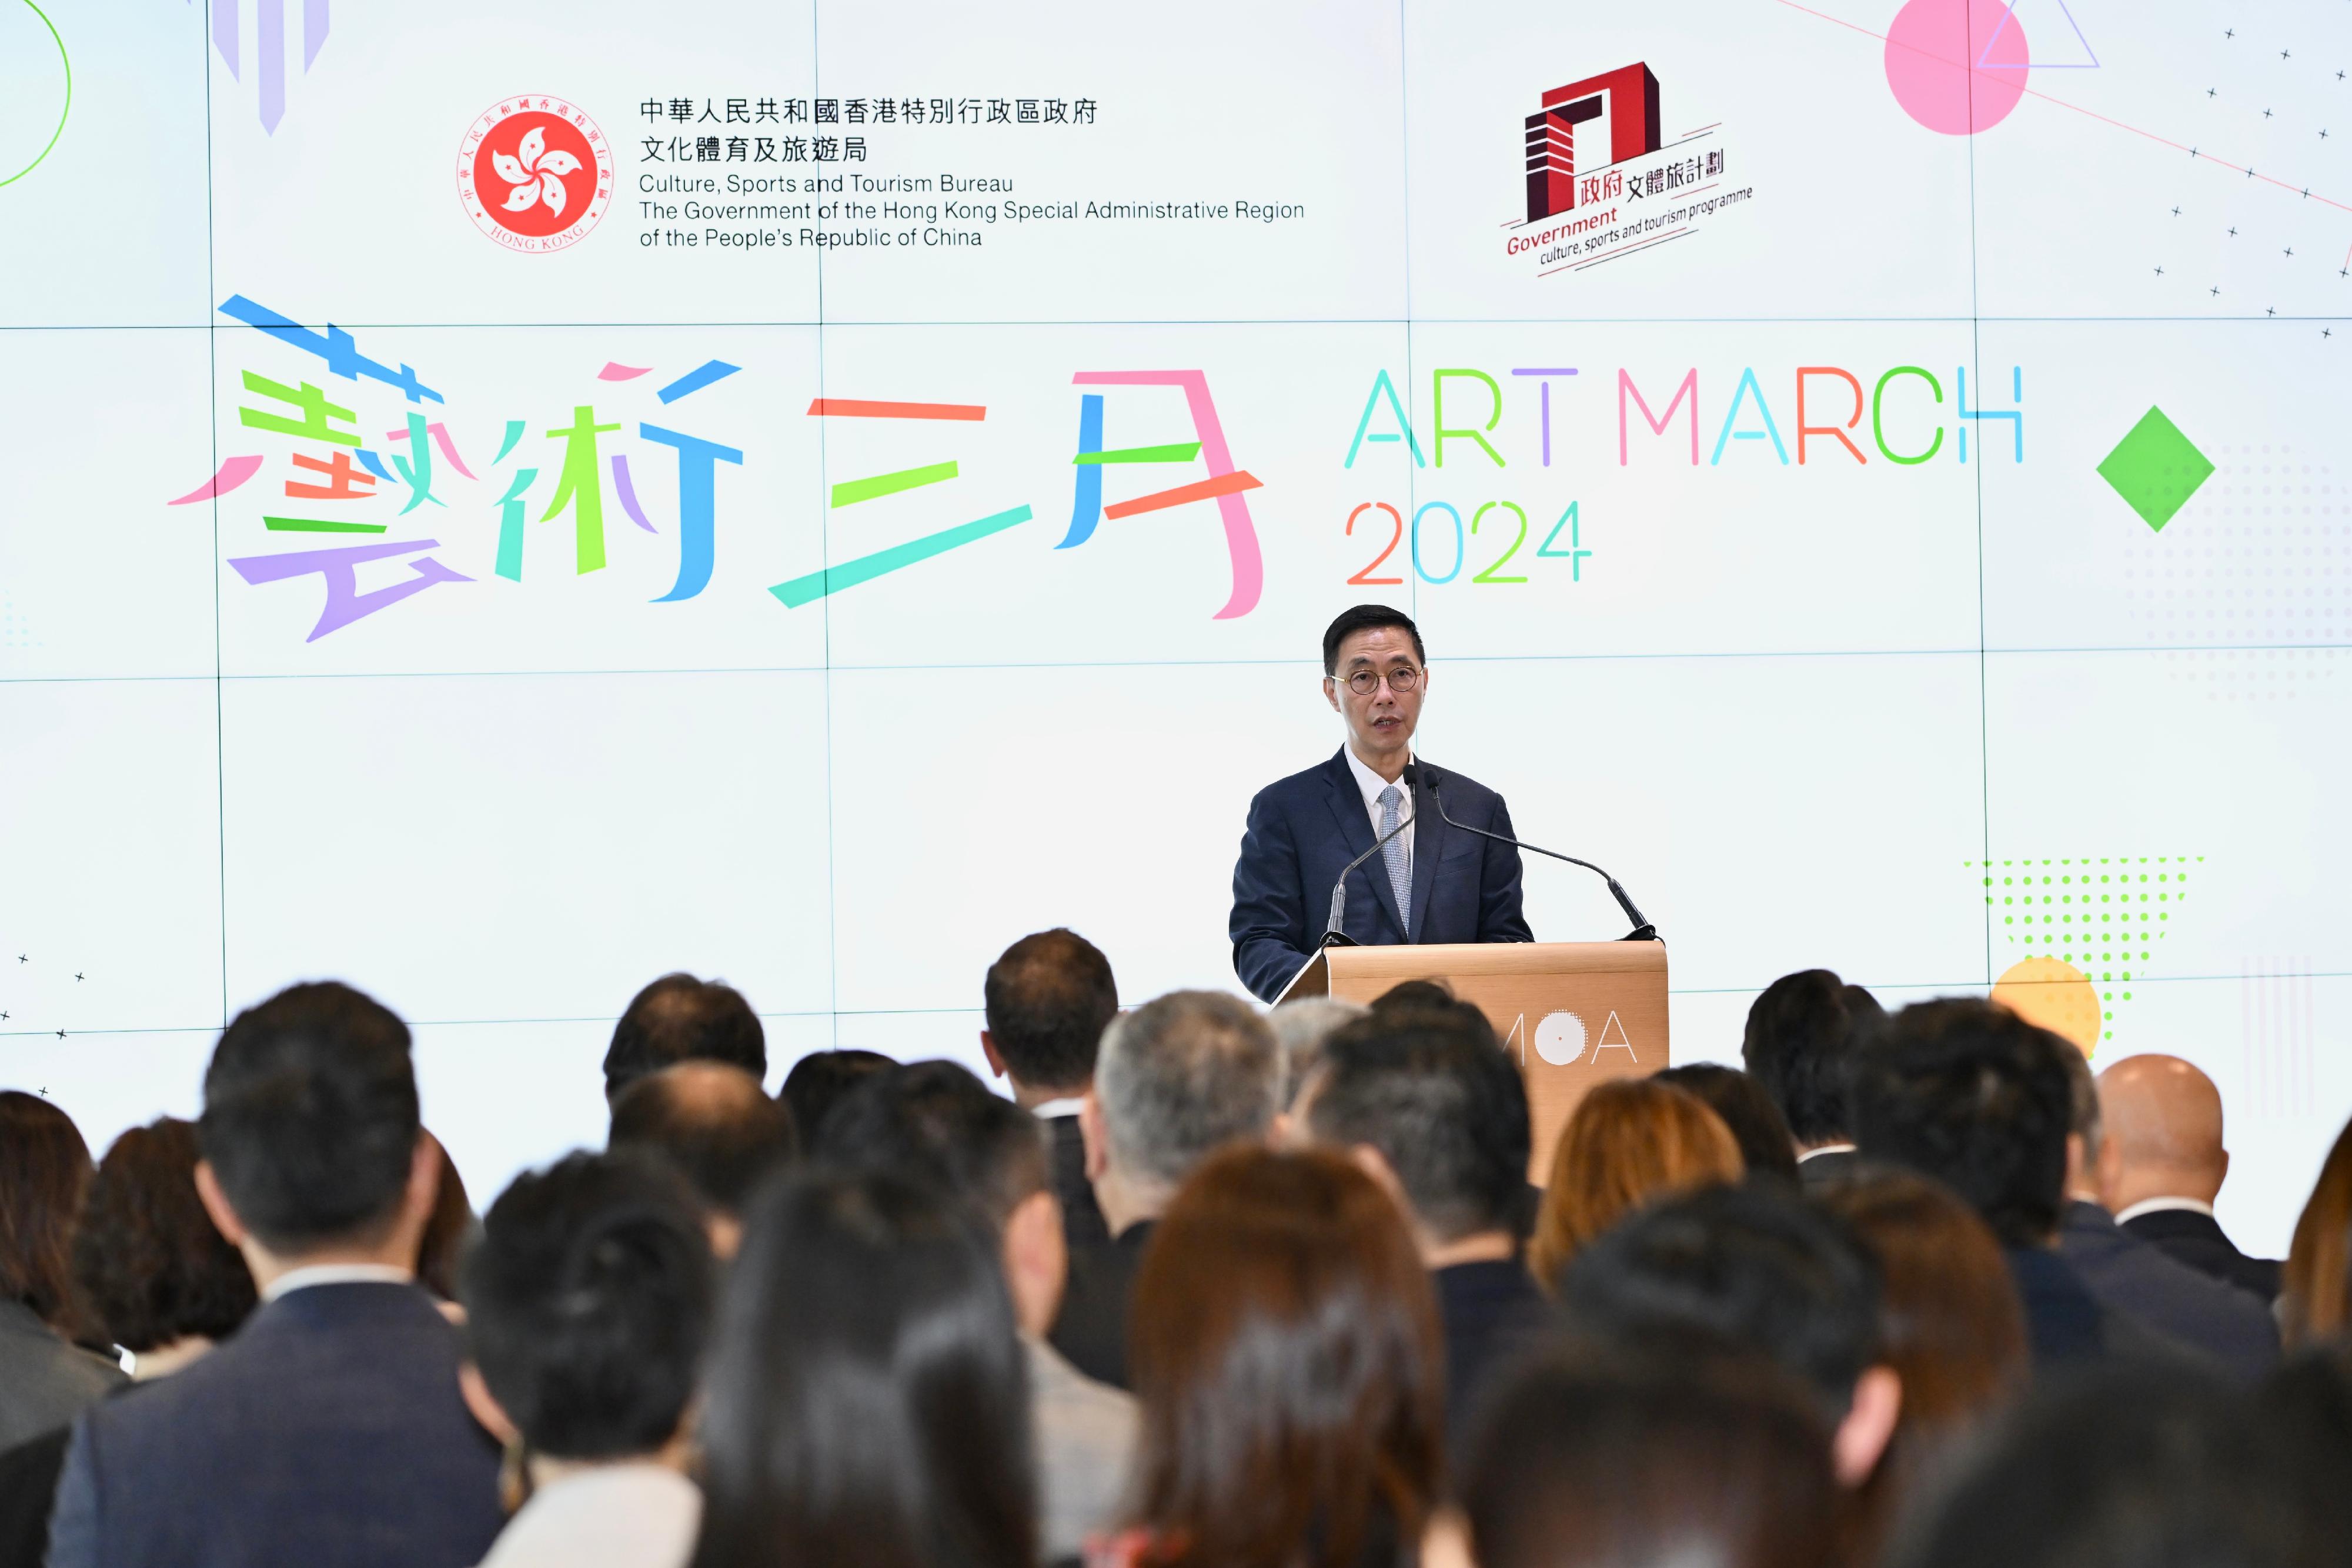 「艺术三月2024」启动礼今日（二月二十二日）举行。图示文化体育及旅游局局长杨润雄致辞。